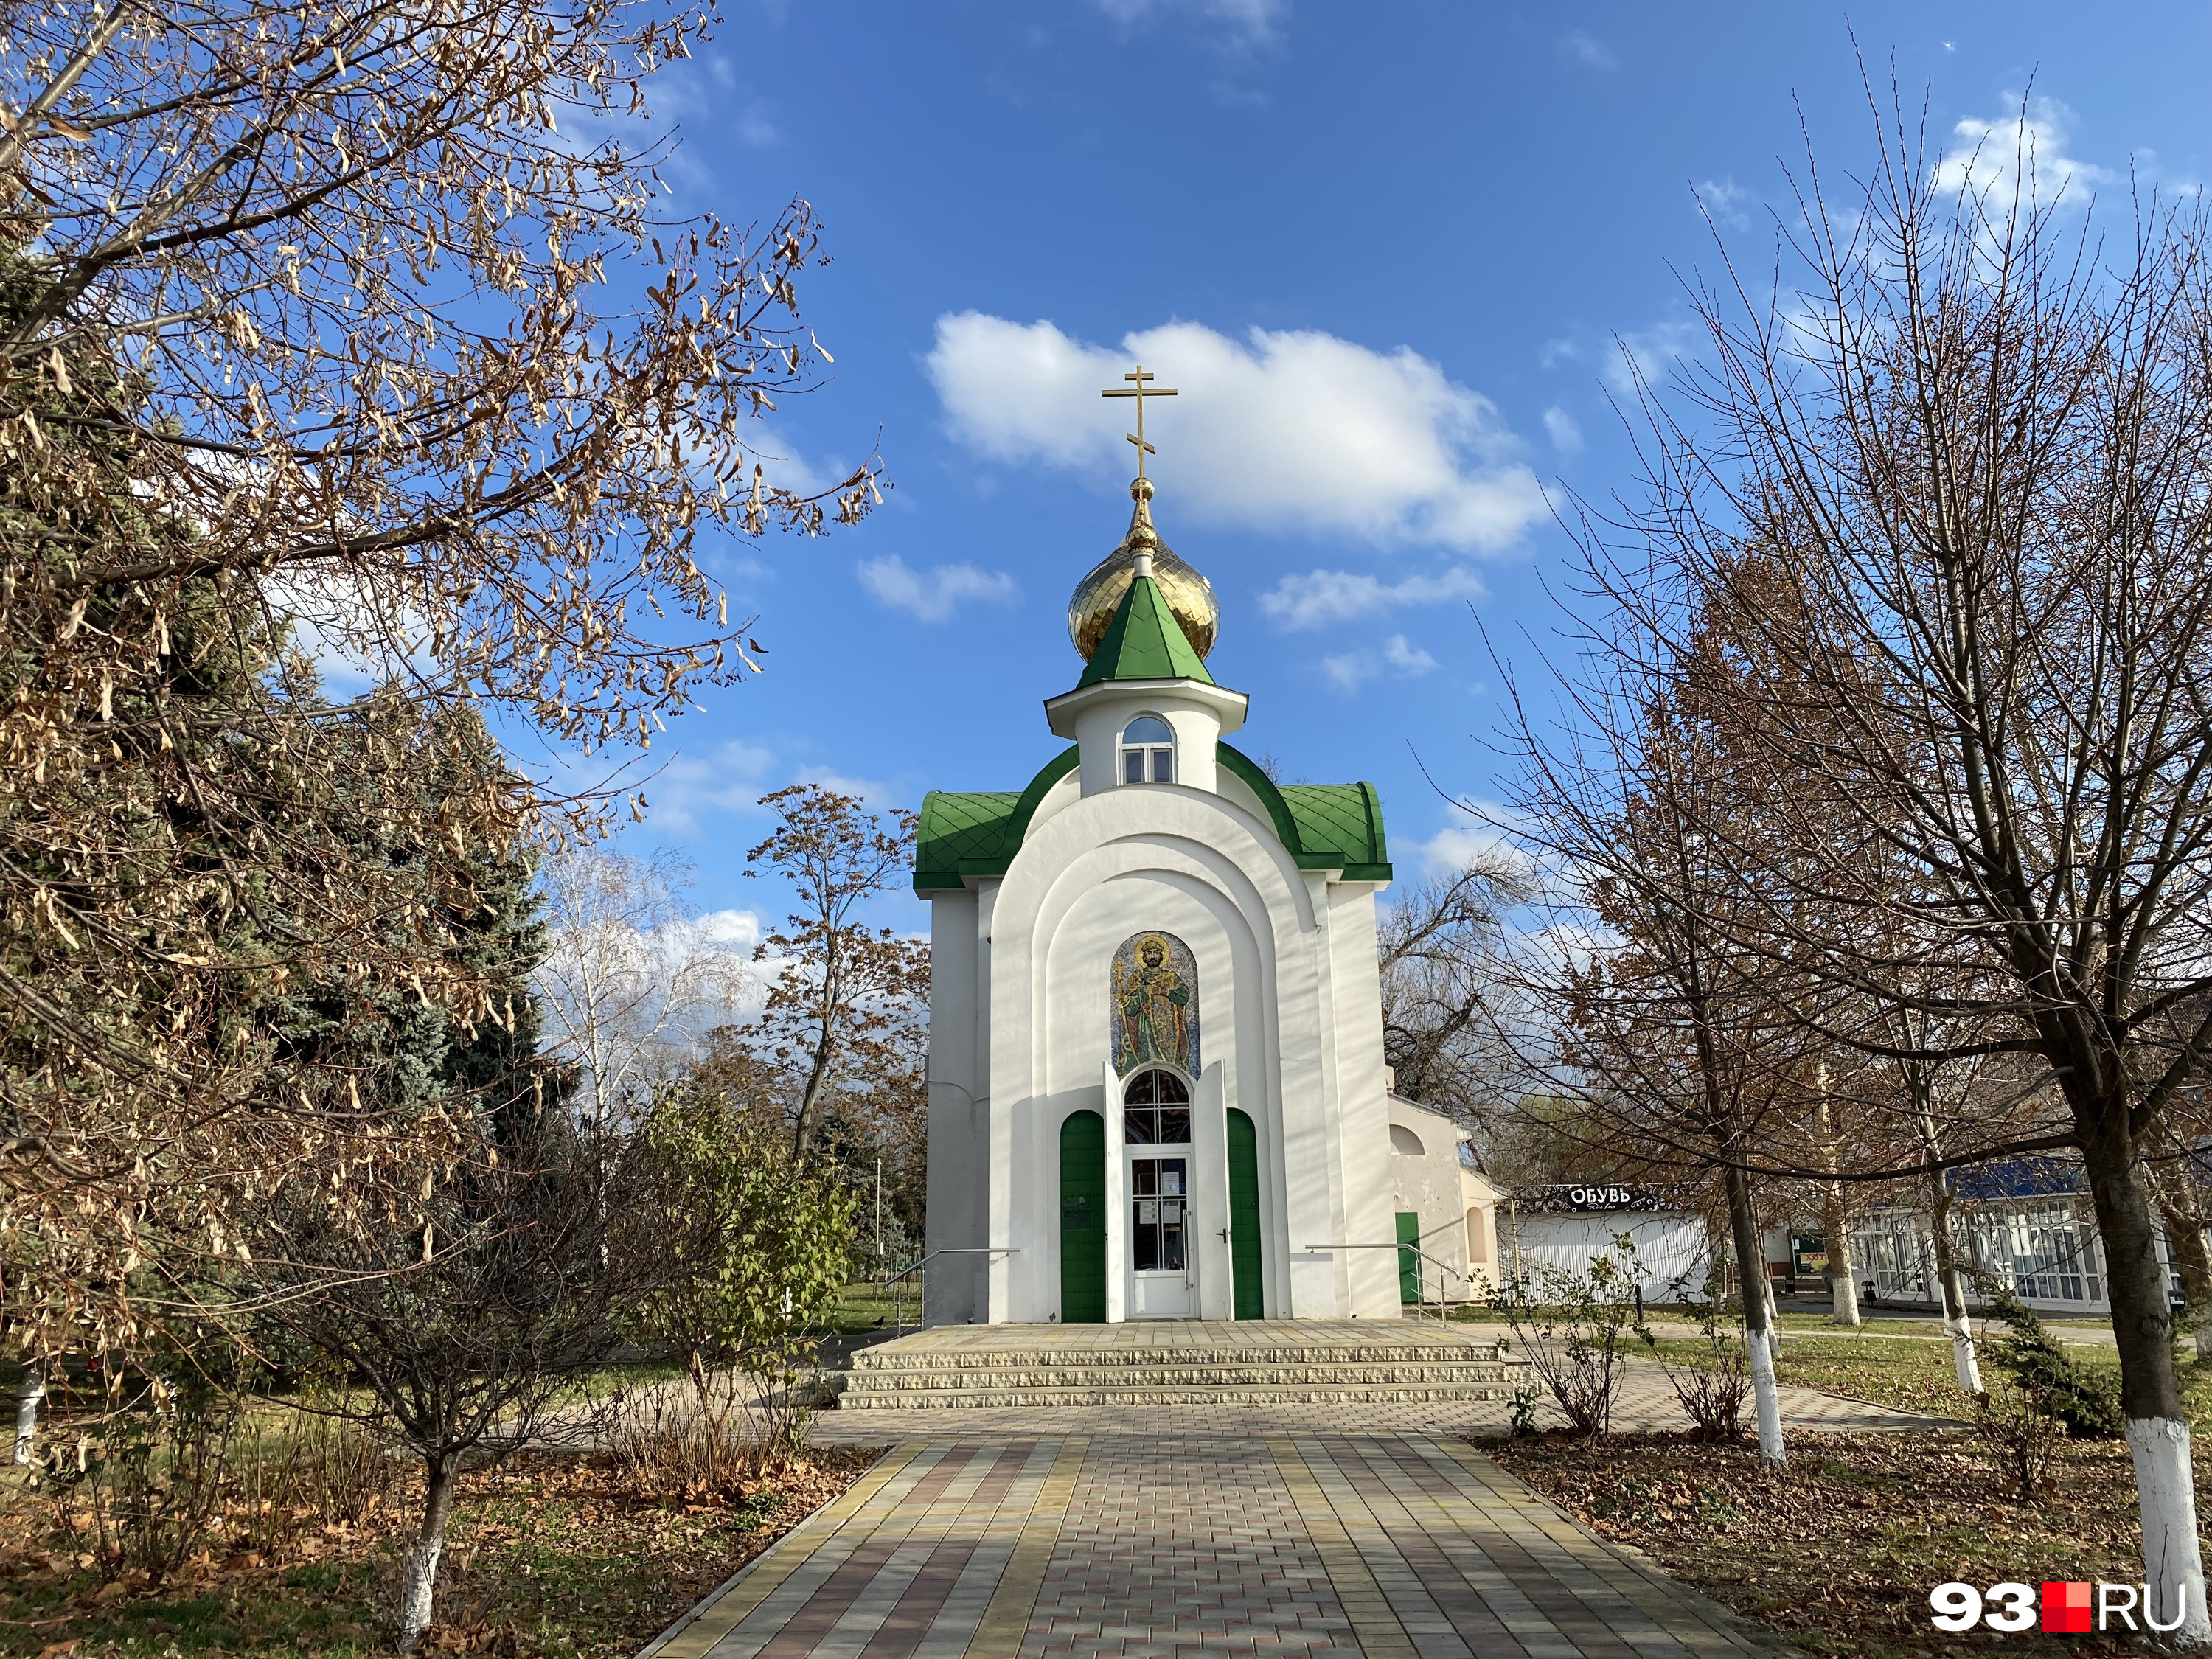 Тимашевск — небольшой город в 70 км от Краснодара